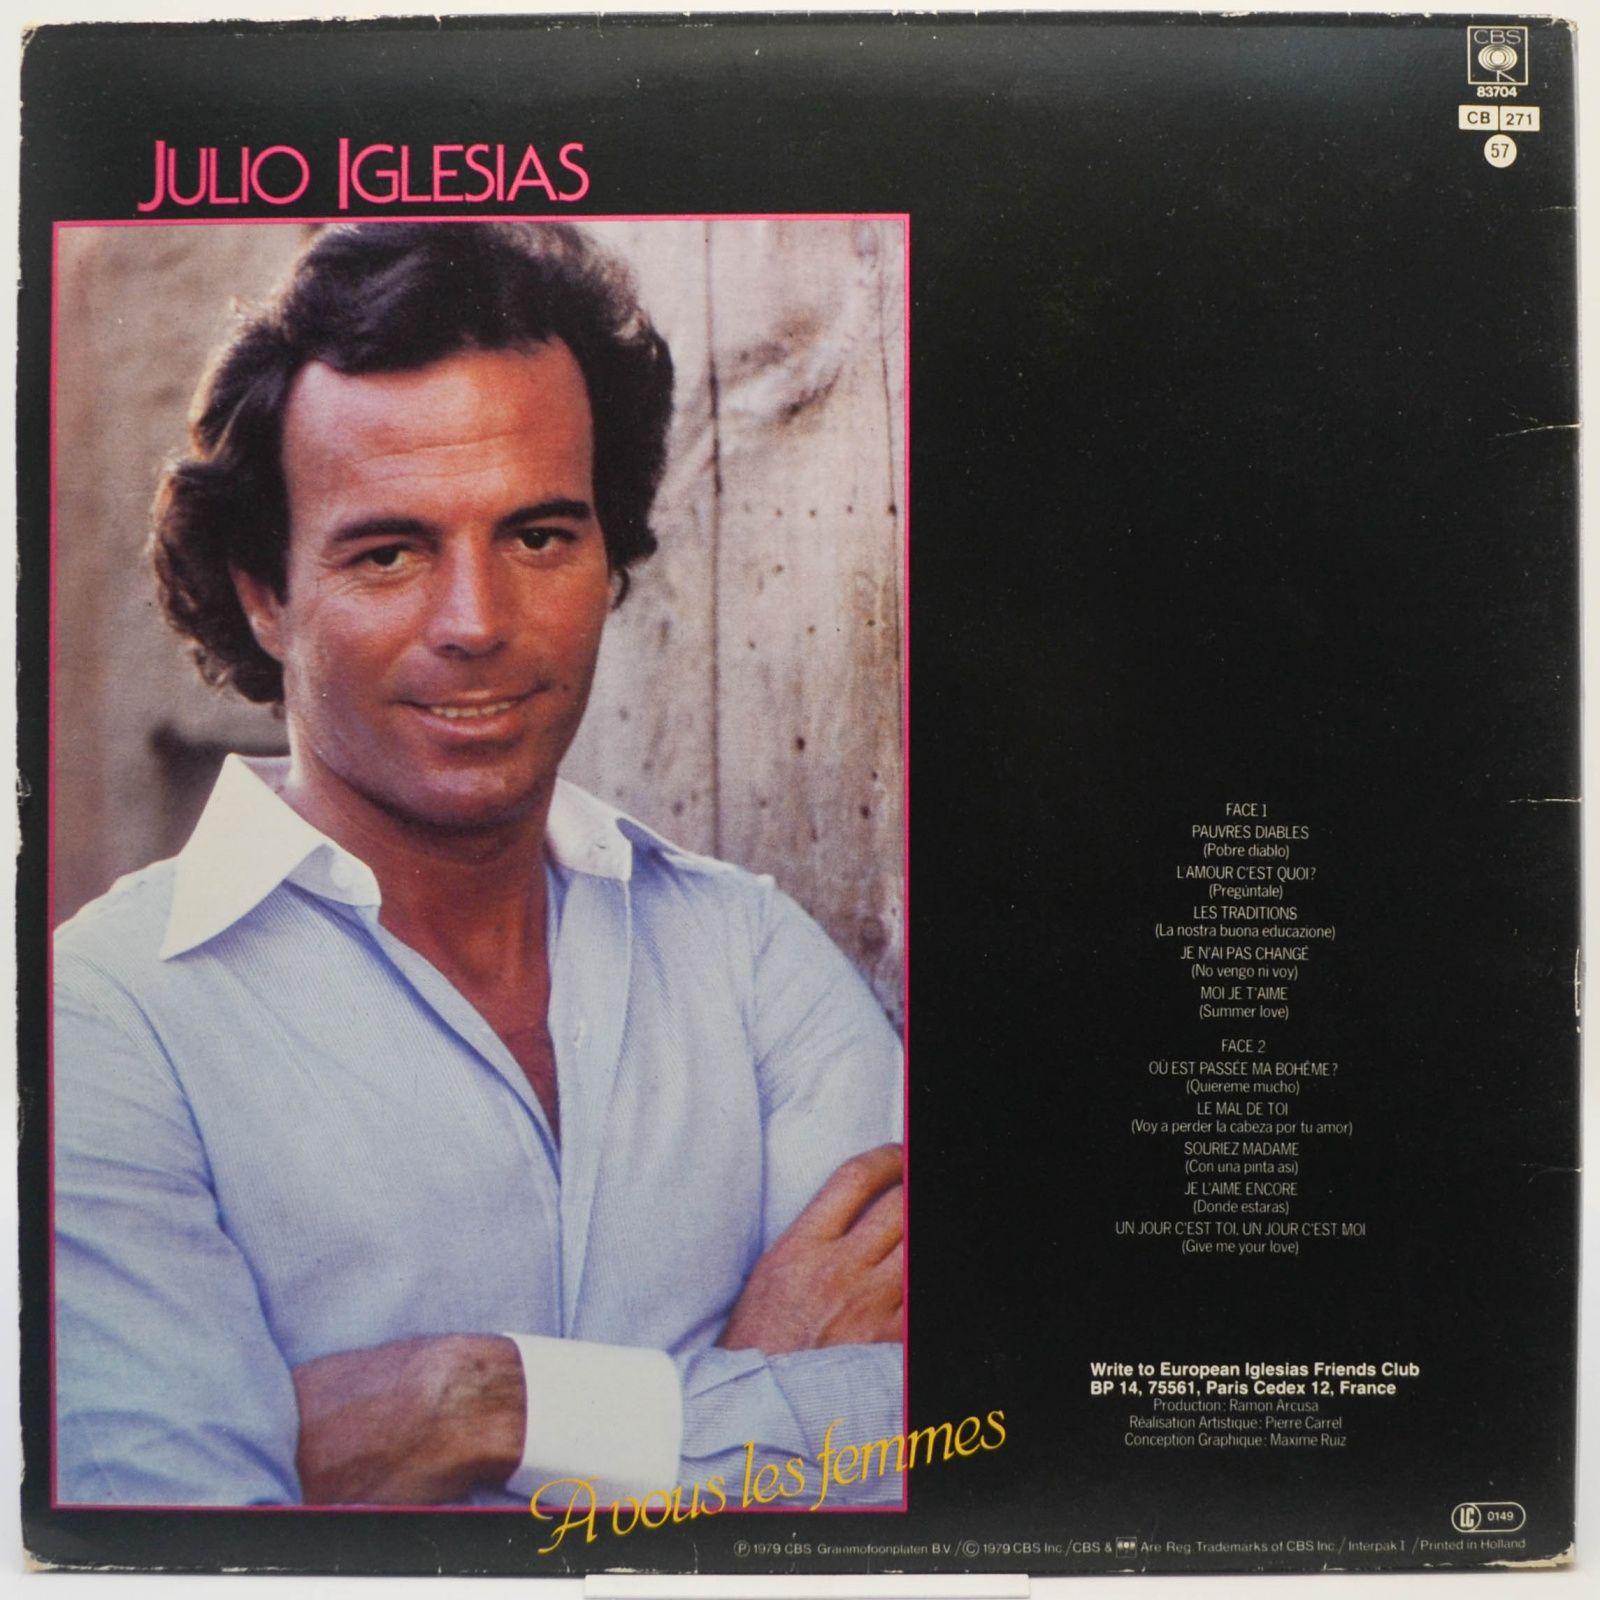 Julio Iglesias — A Vous Les Femmes, 1979